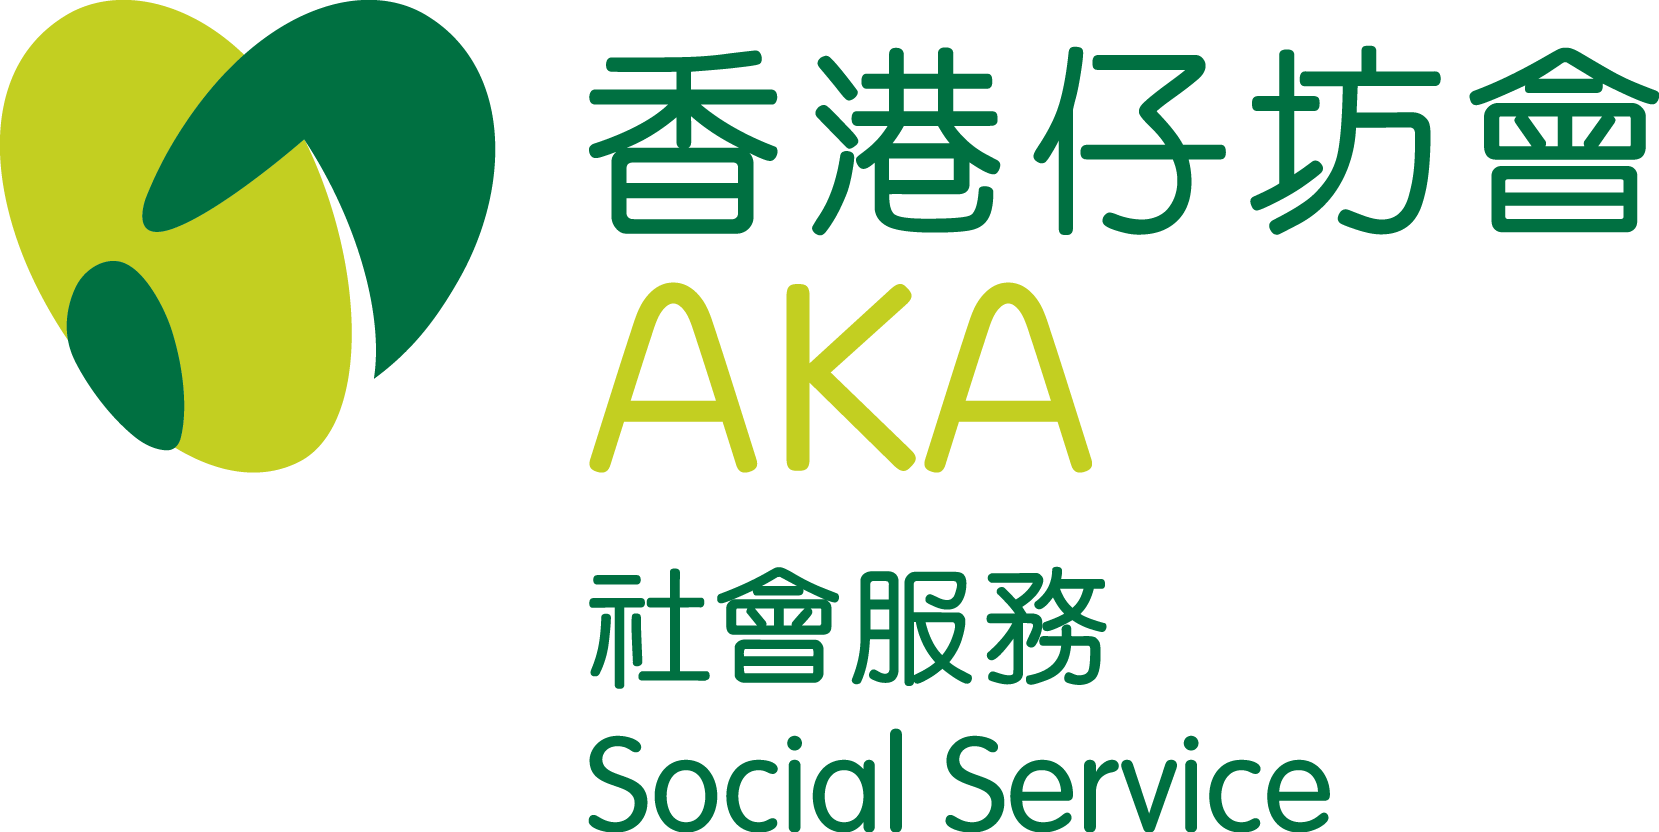 香港仔坊會社會服務南區長者綜合服務處